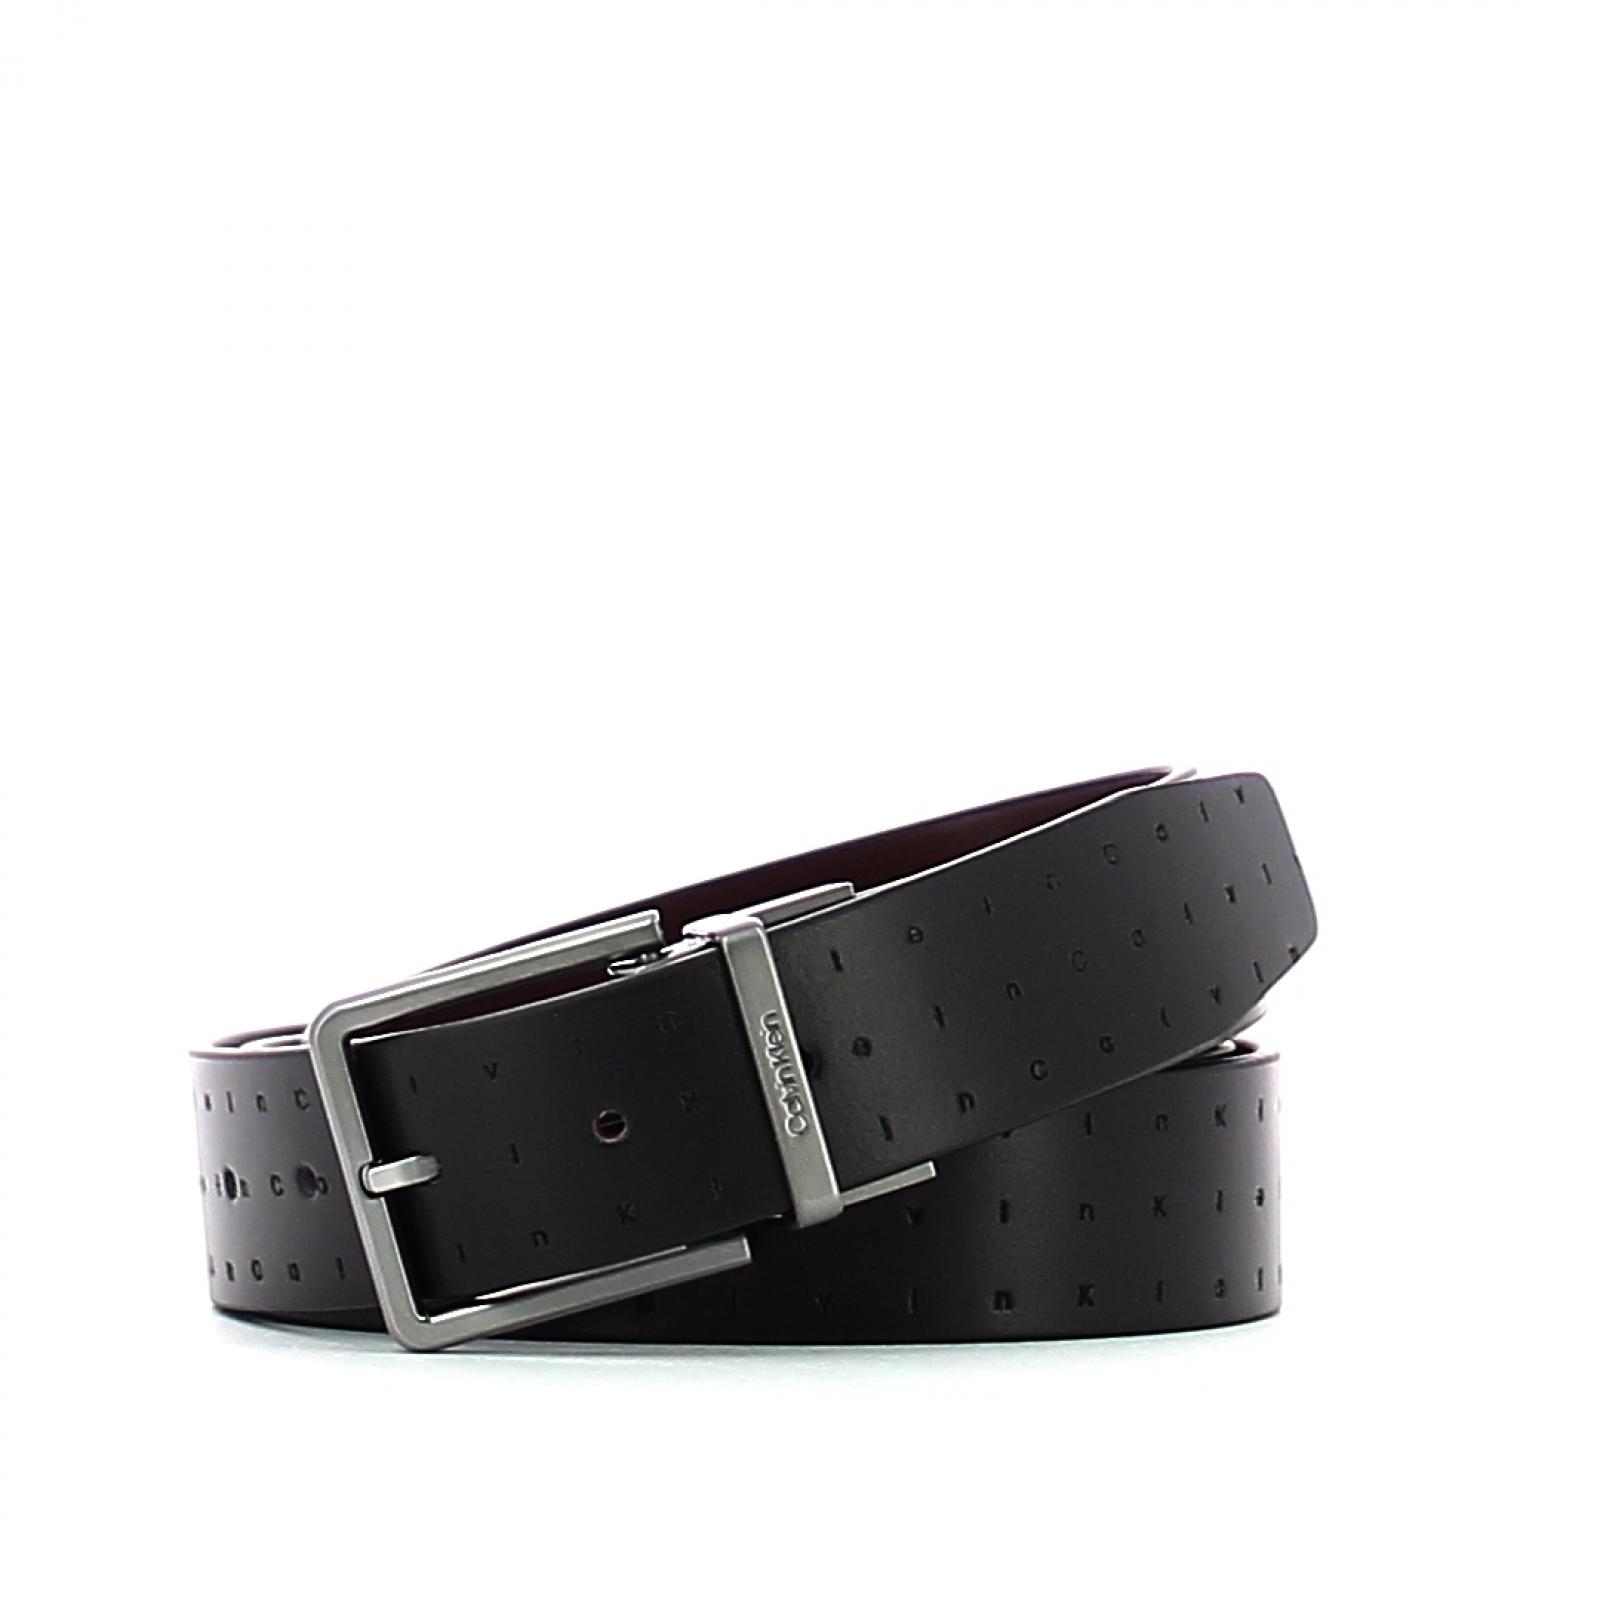 Doubleface leather belt 3.5 cm - 1